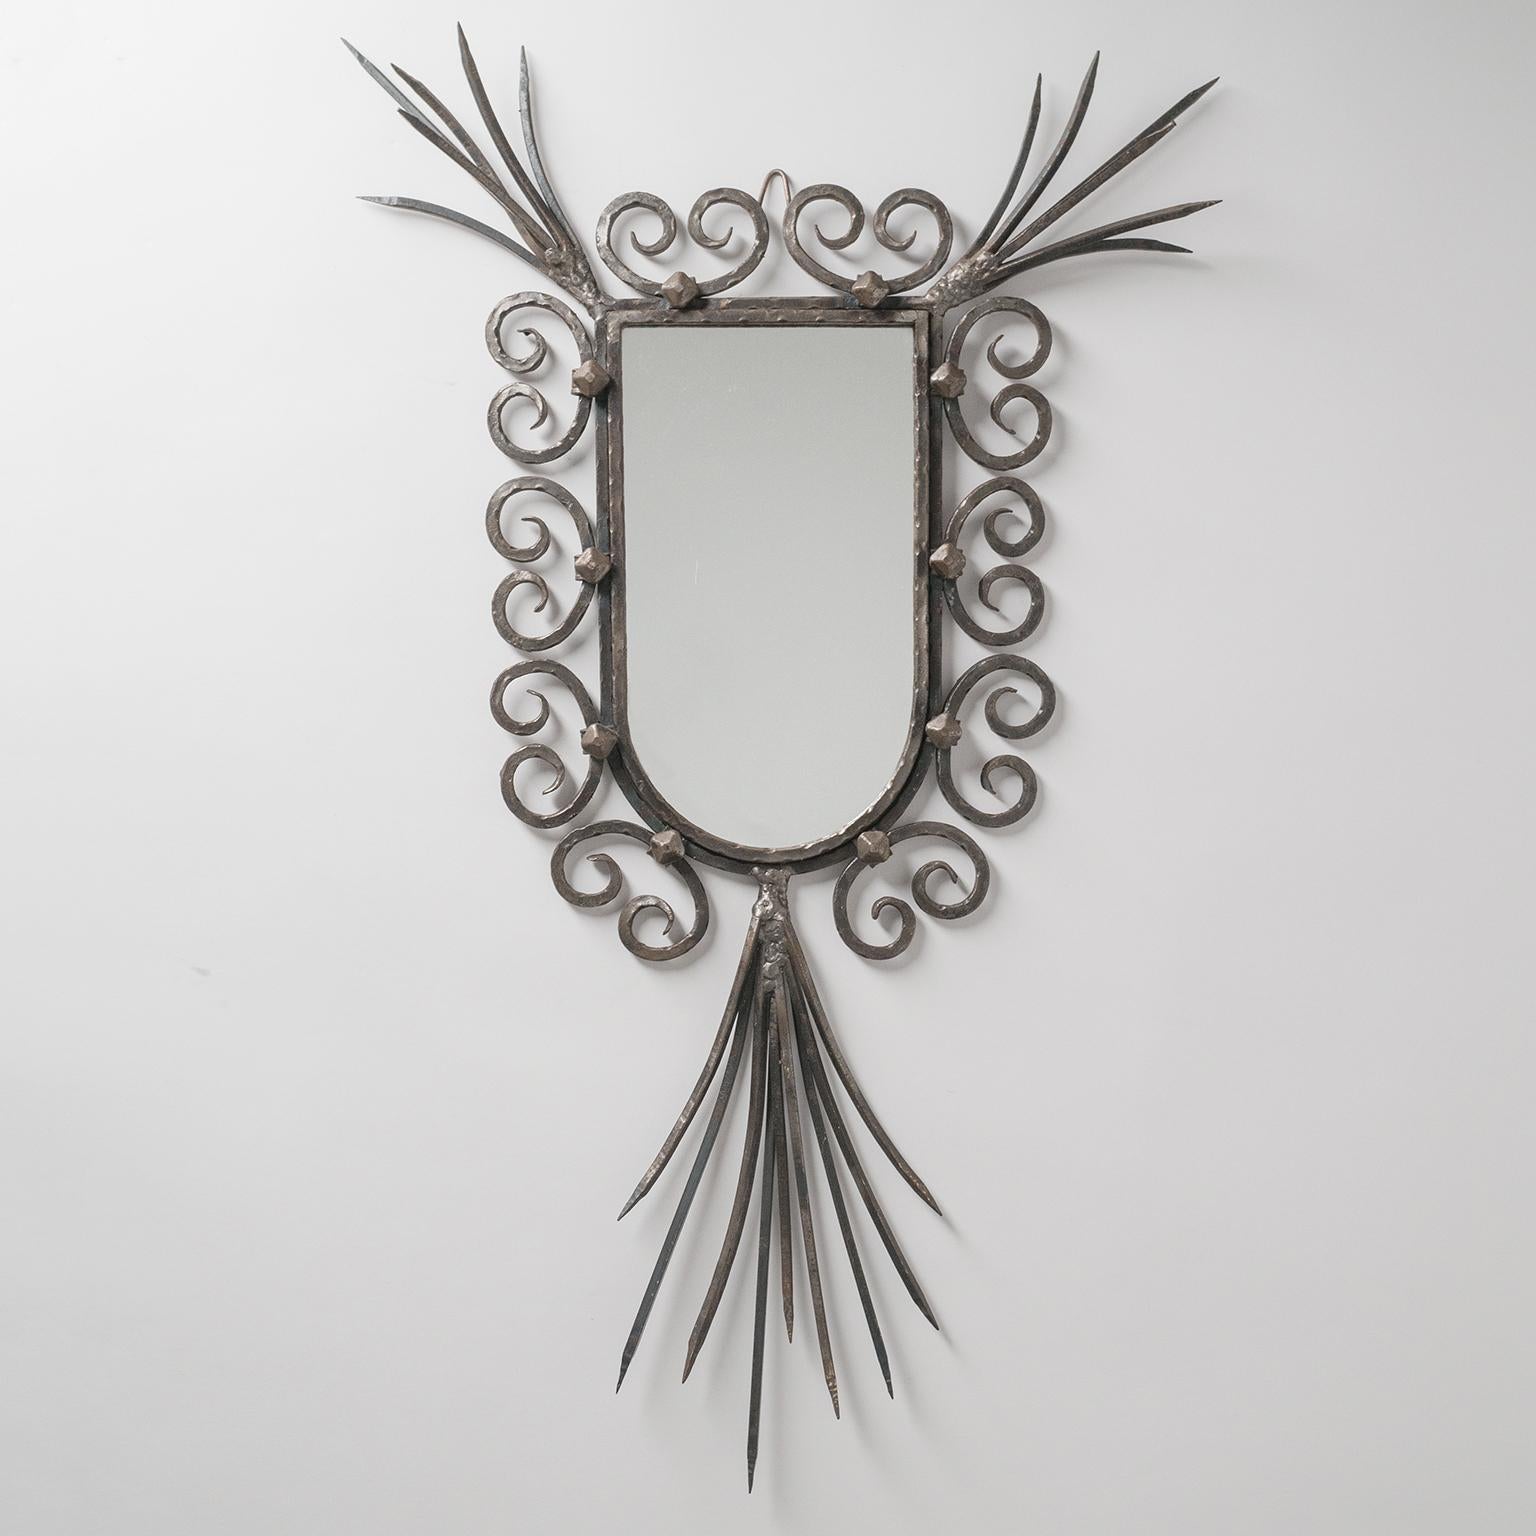 Seltener französischer Brutalismus-Spiegel aus den 1960-1970er Jahren. Sehr ungewöhnliches skulpturales Design, das klassische Elemente mit ausdrucksstarker Rohheit